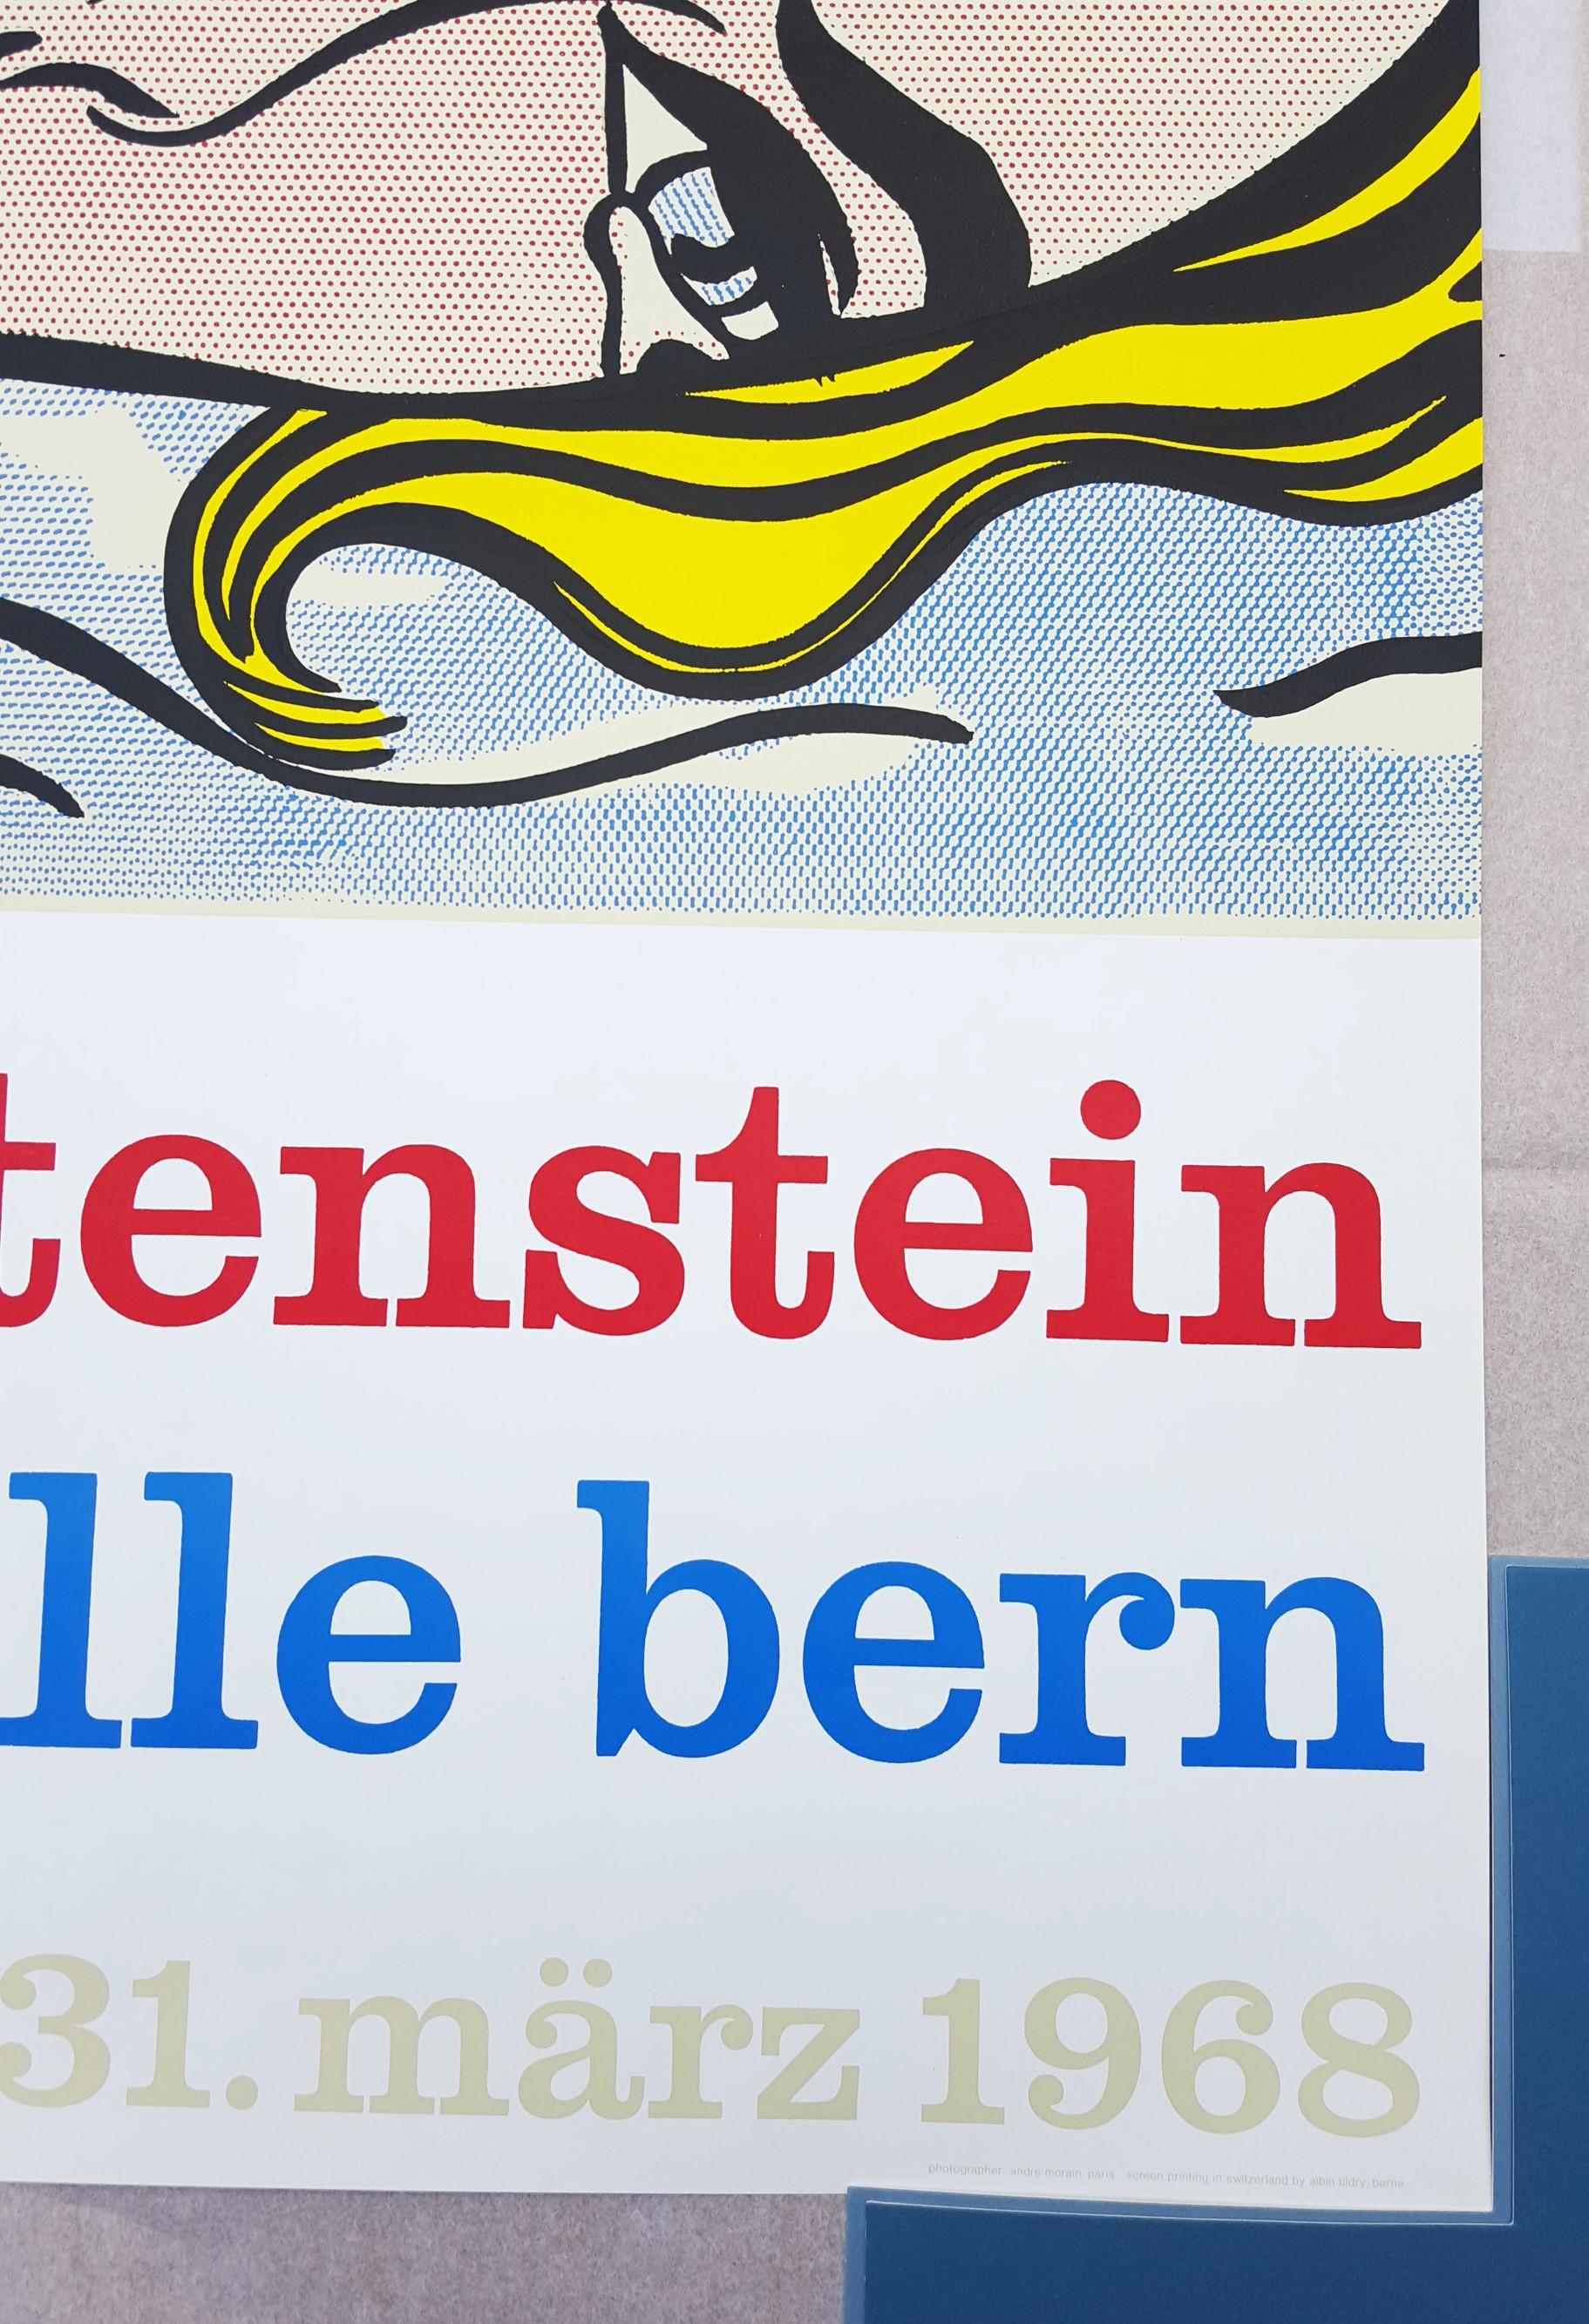 Kunsthalle Bern (Hopeless) Poster /// Pop Art Roy Lichtenstein Screenprint Huge For Sale 2